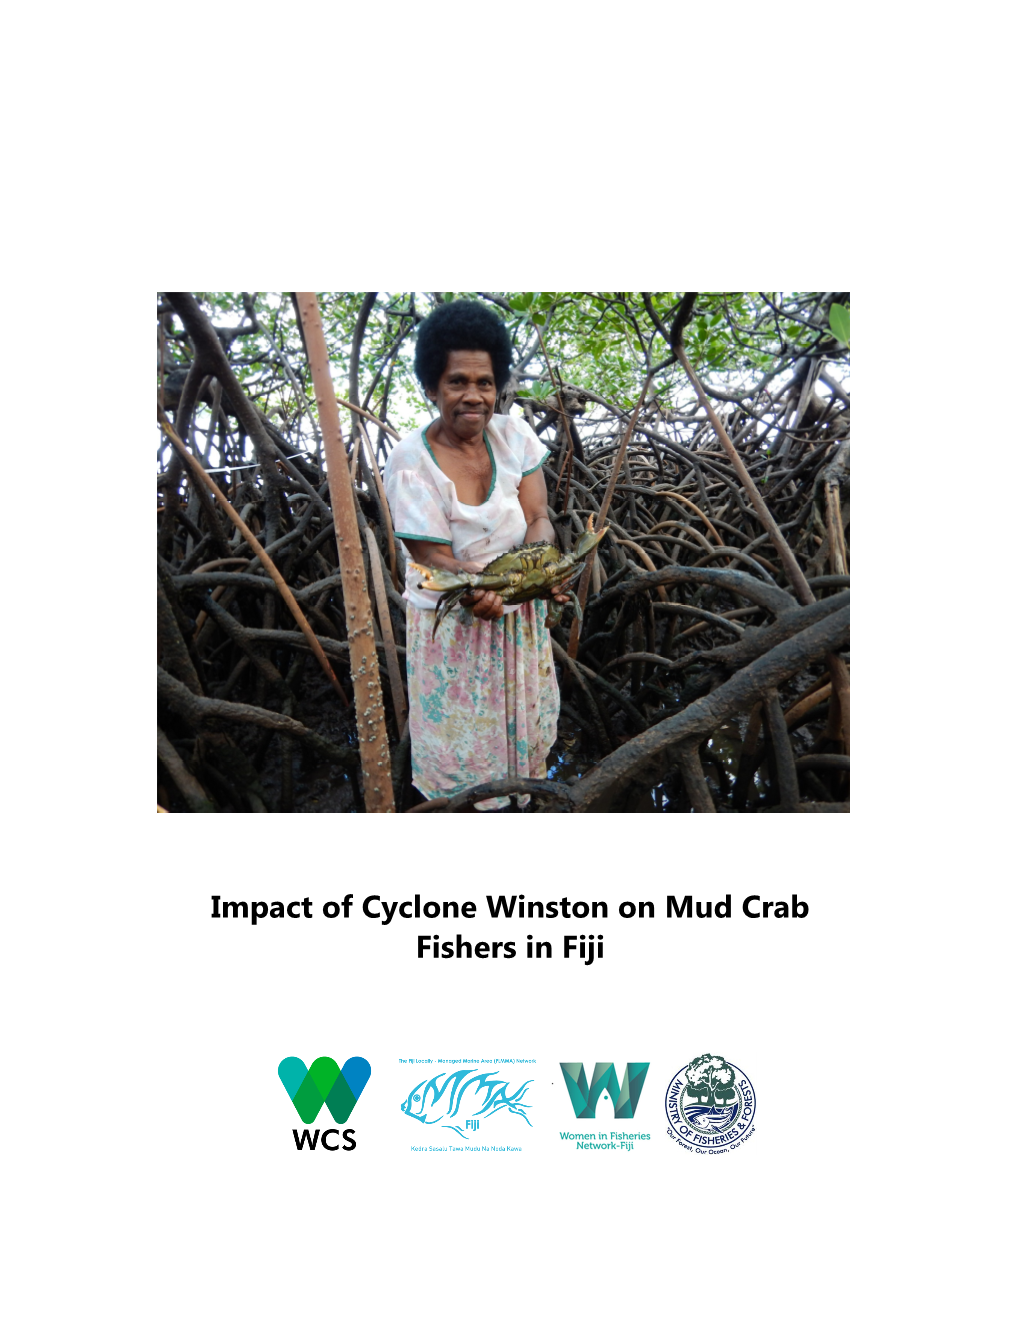 Impact of Cyclone Winston on Mud Crab Fishers in Fiji